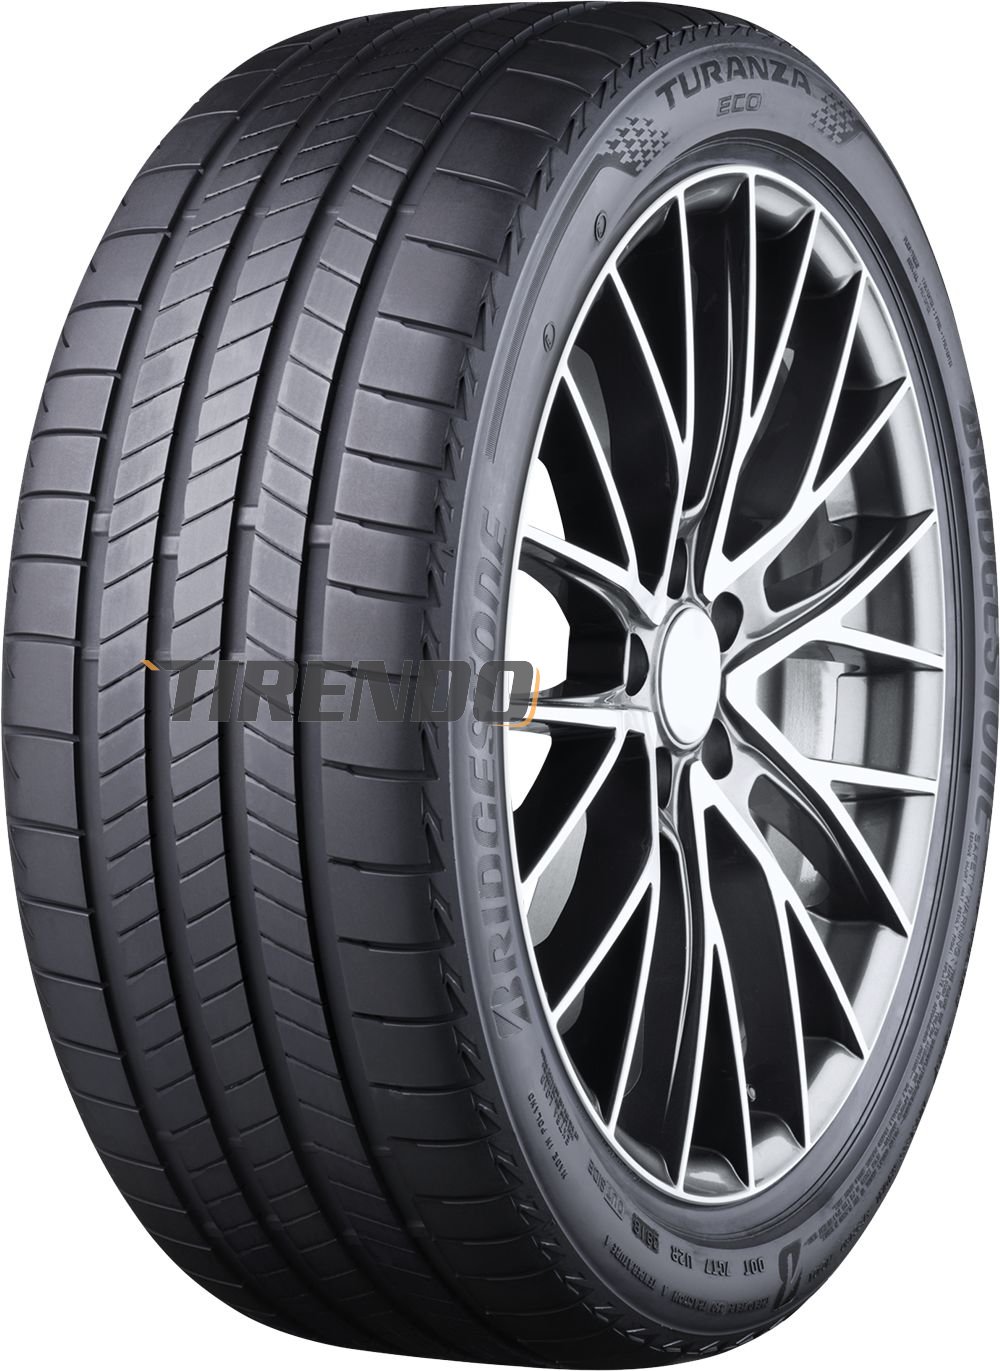 Image of Bridgestone Turanza Eco ( 185/65 R15 92H XL Enliten / EV )